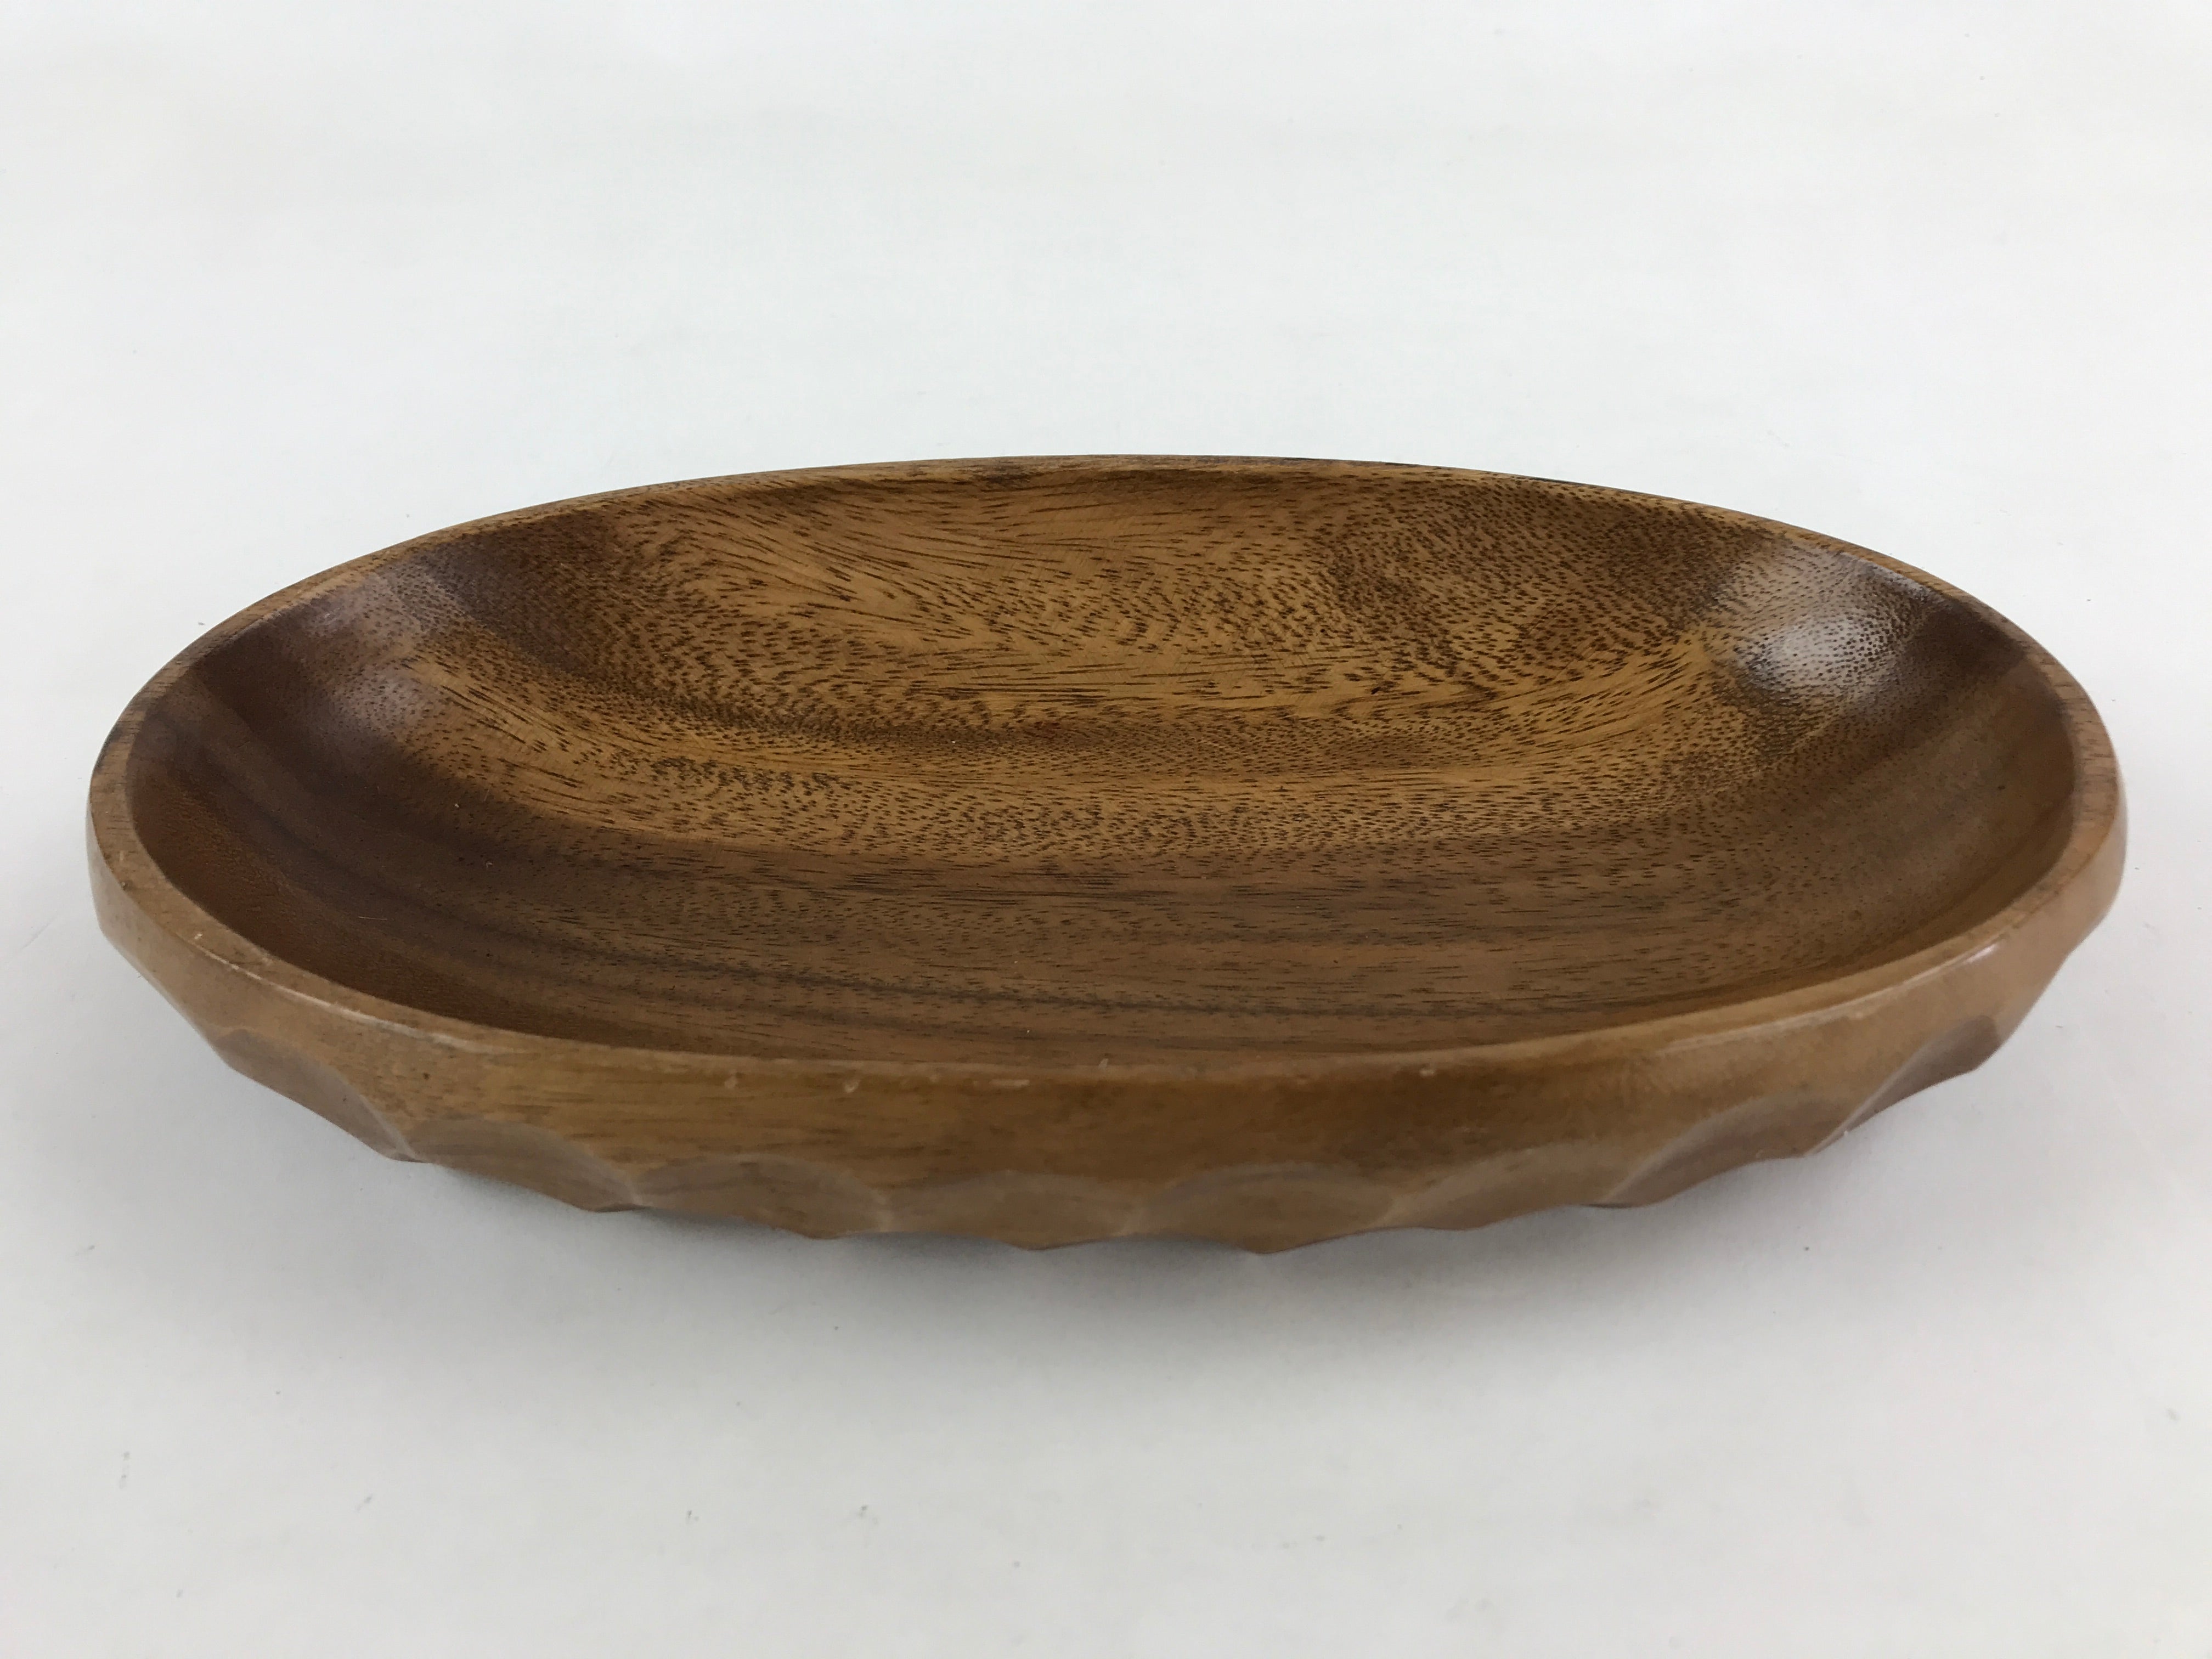 Japanese Wooden Snack Bowl Vtg Serving Kashiki Brown Oval Carved Design UR896